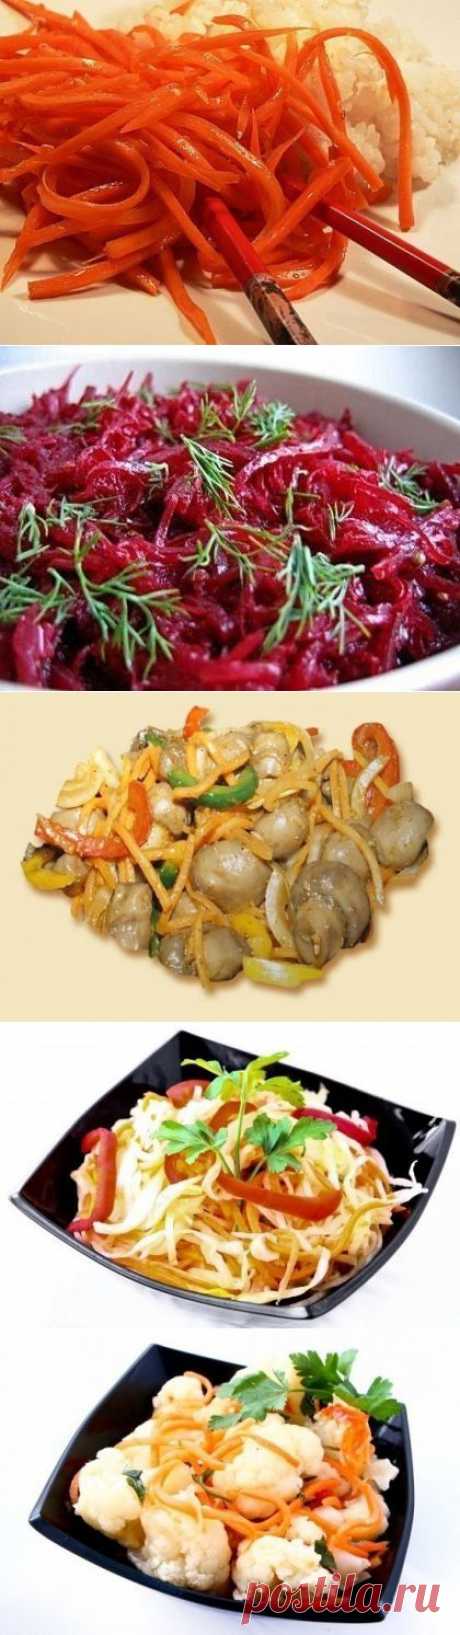 Салаты по-корейски / Вкусные привычки